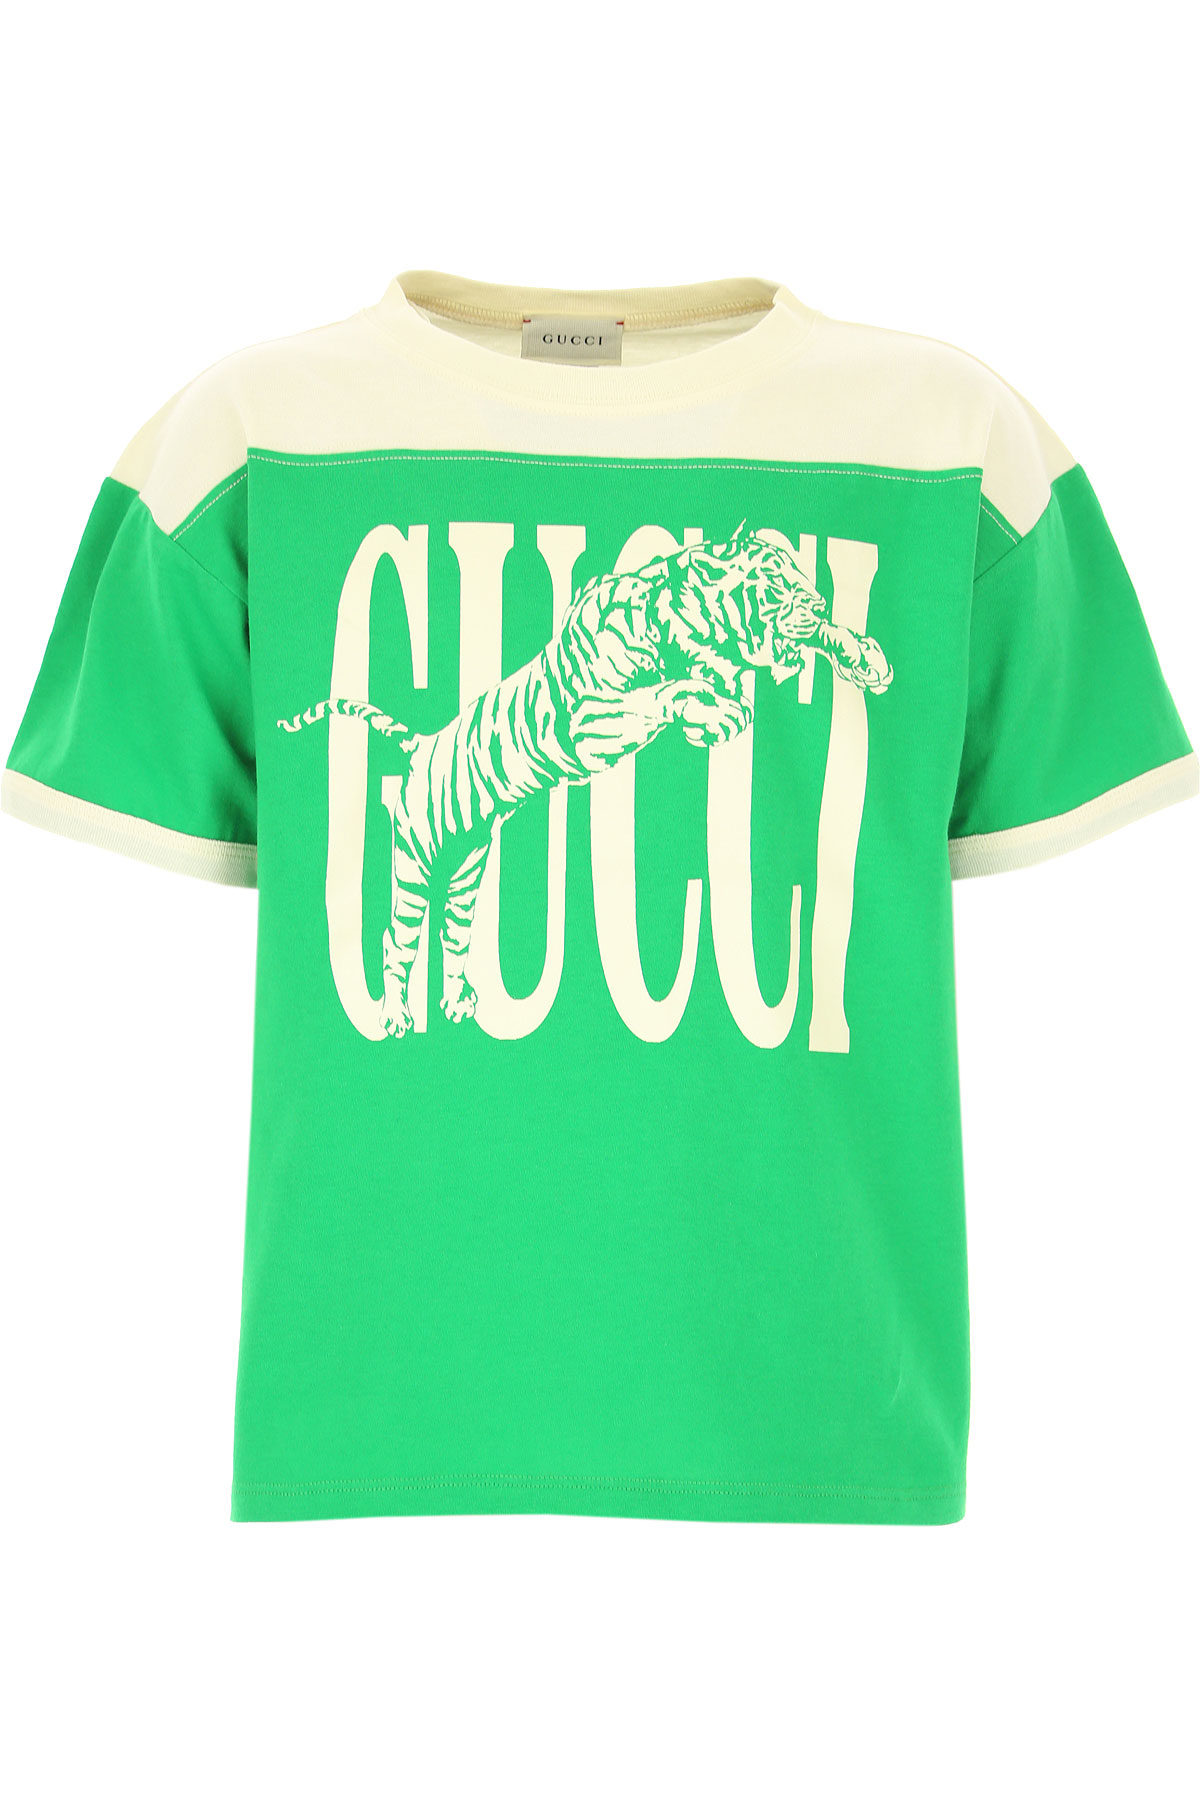 Gucci Kinder T-Shirt für Jungen Günstig im Sale, Creme, Baumwolle, 2017, 10Y 4Y 6Y 8Y